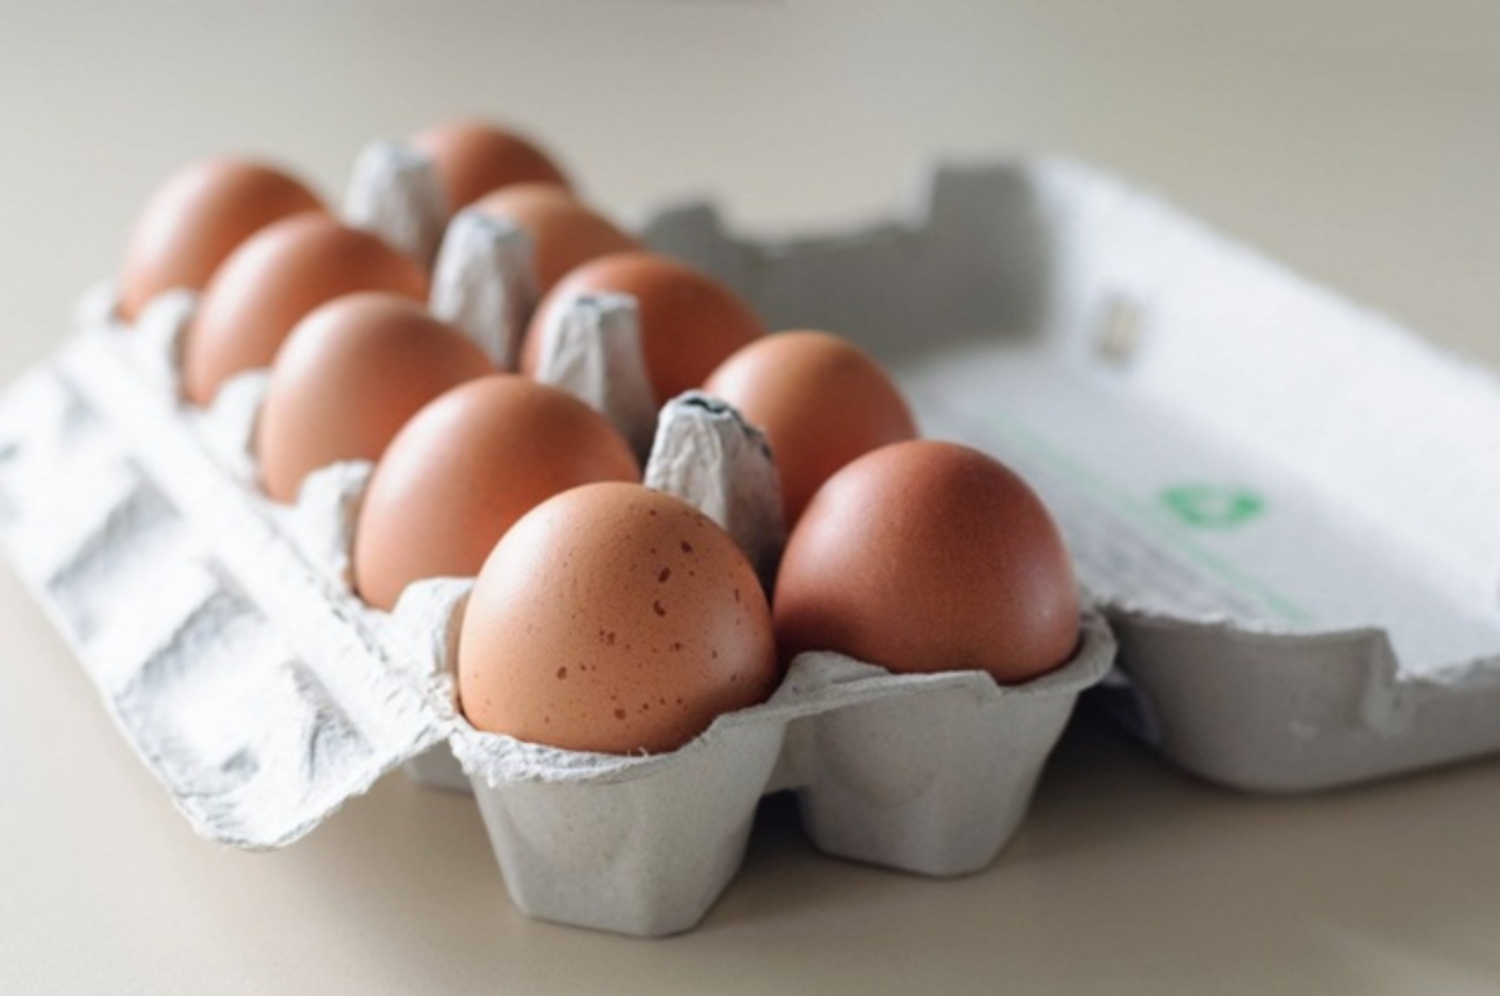 Quả trứng là nguồn dinh dưỡng vô cùng tốt cho sức khỏe và nó cũng cực kỳ đa dạng trong việc chế biến ra các món ăn ngon. Nếu bạn muốn tối đa hóa lợi ích của quả trứng trong bữa ăn hàng ngày của mình, hãy xem bức hình liên quan đến từ khóa này để tìm thêm thông tin và lấy cảm hứng cho những món ăn mới.